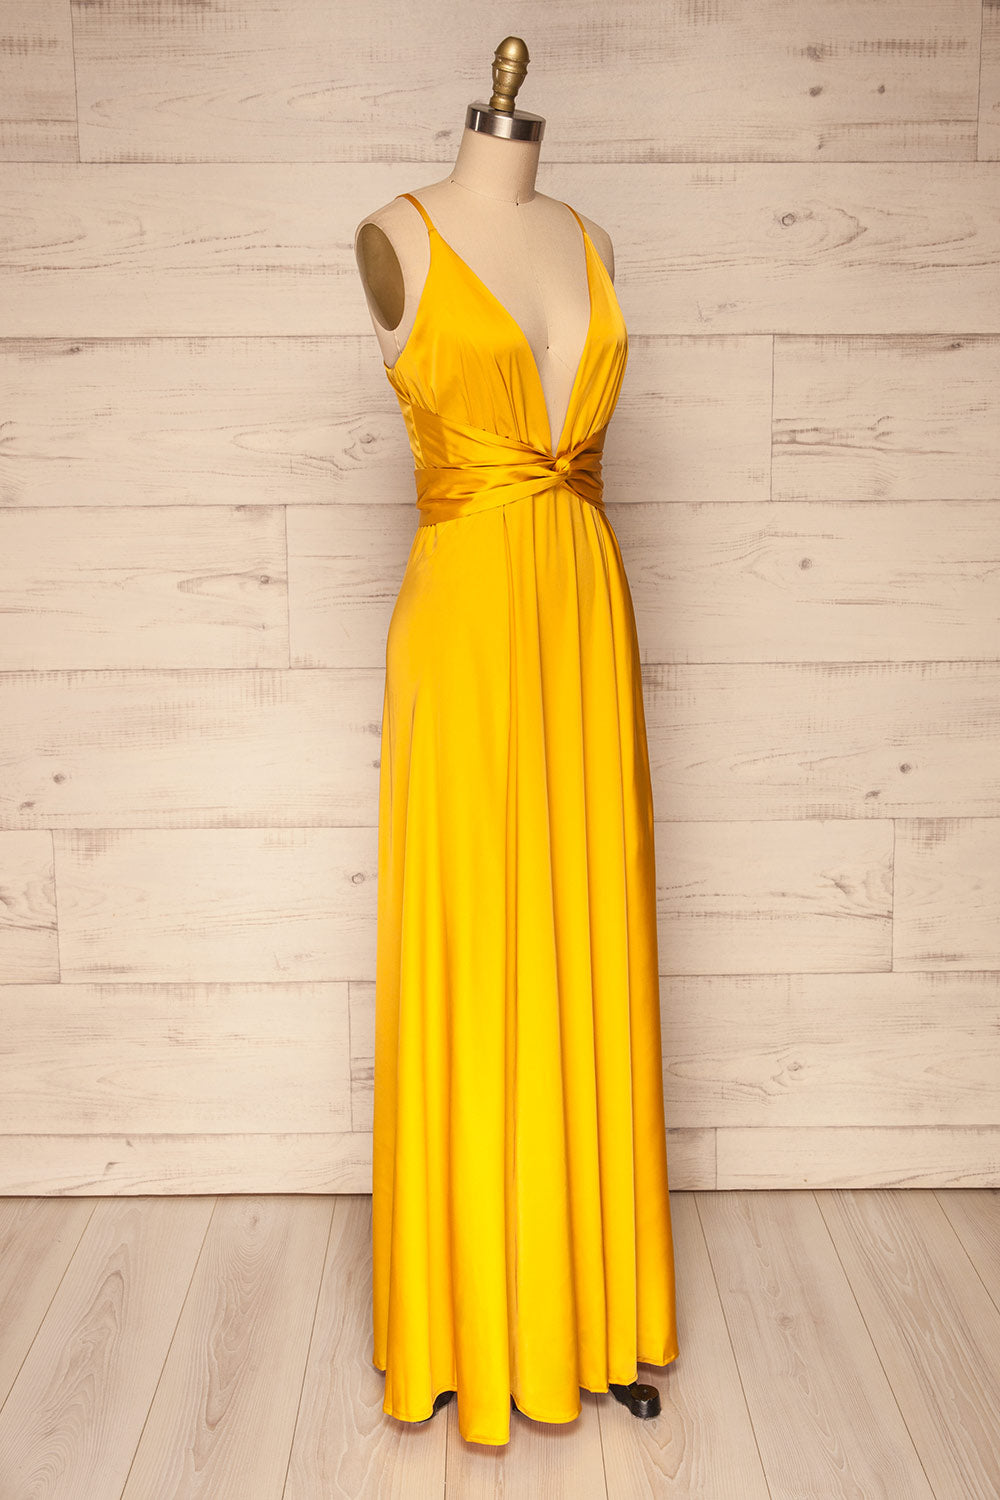 Roksem Jaune Yellow Satin A-Line Gown | La Petite Garçonne side view 